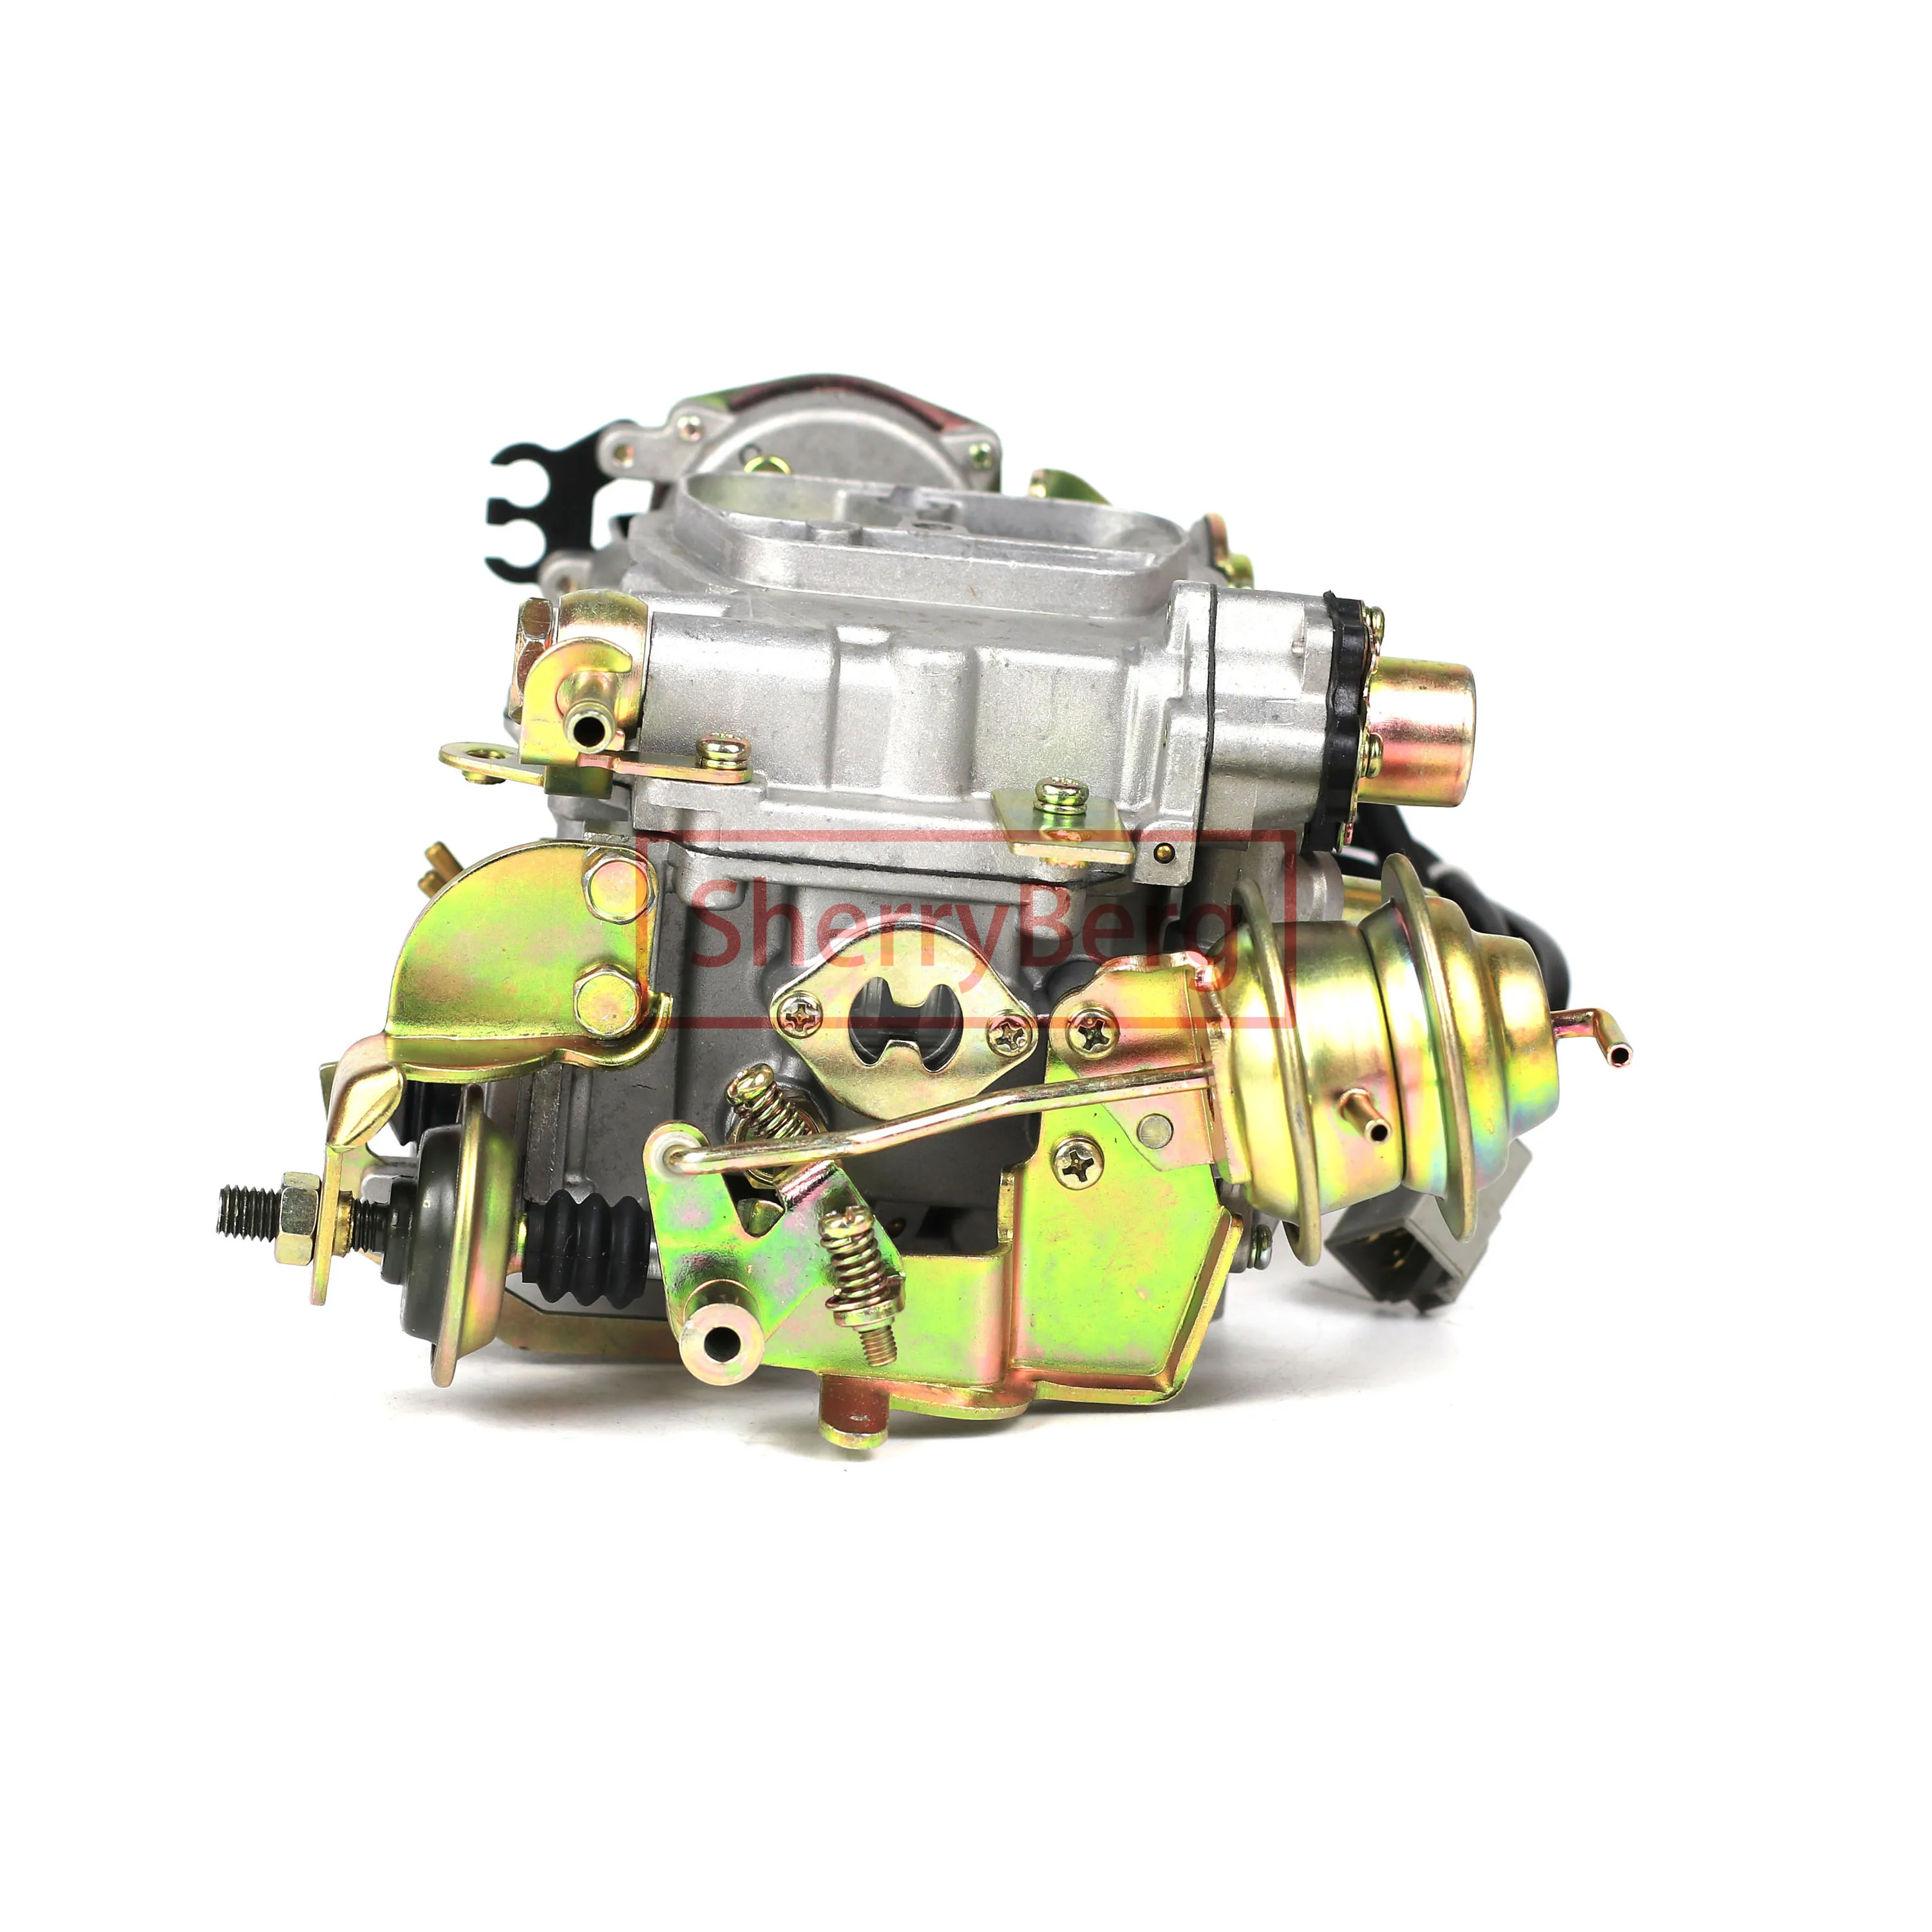 SherryBerg Carburador Carb Carburettor for Toyota 3rz Engine OEM 21100-75101 CARBURETOR CARBY UPGRADE 3 RZ Carbrador Vergaser